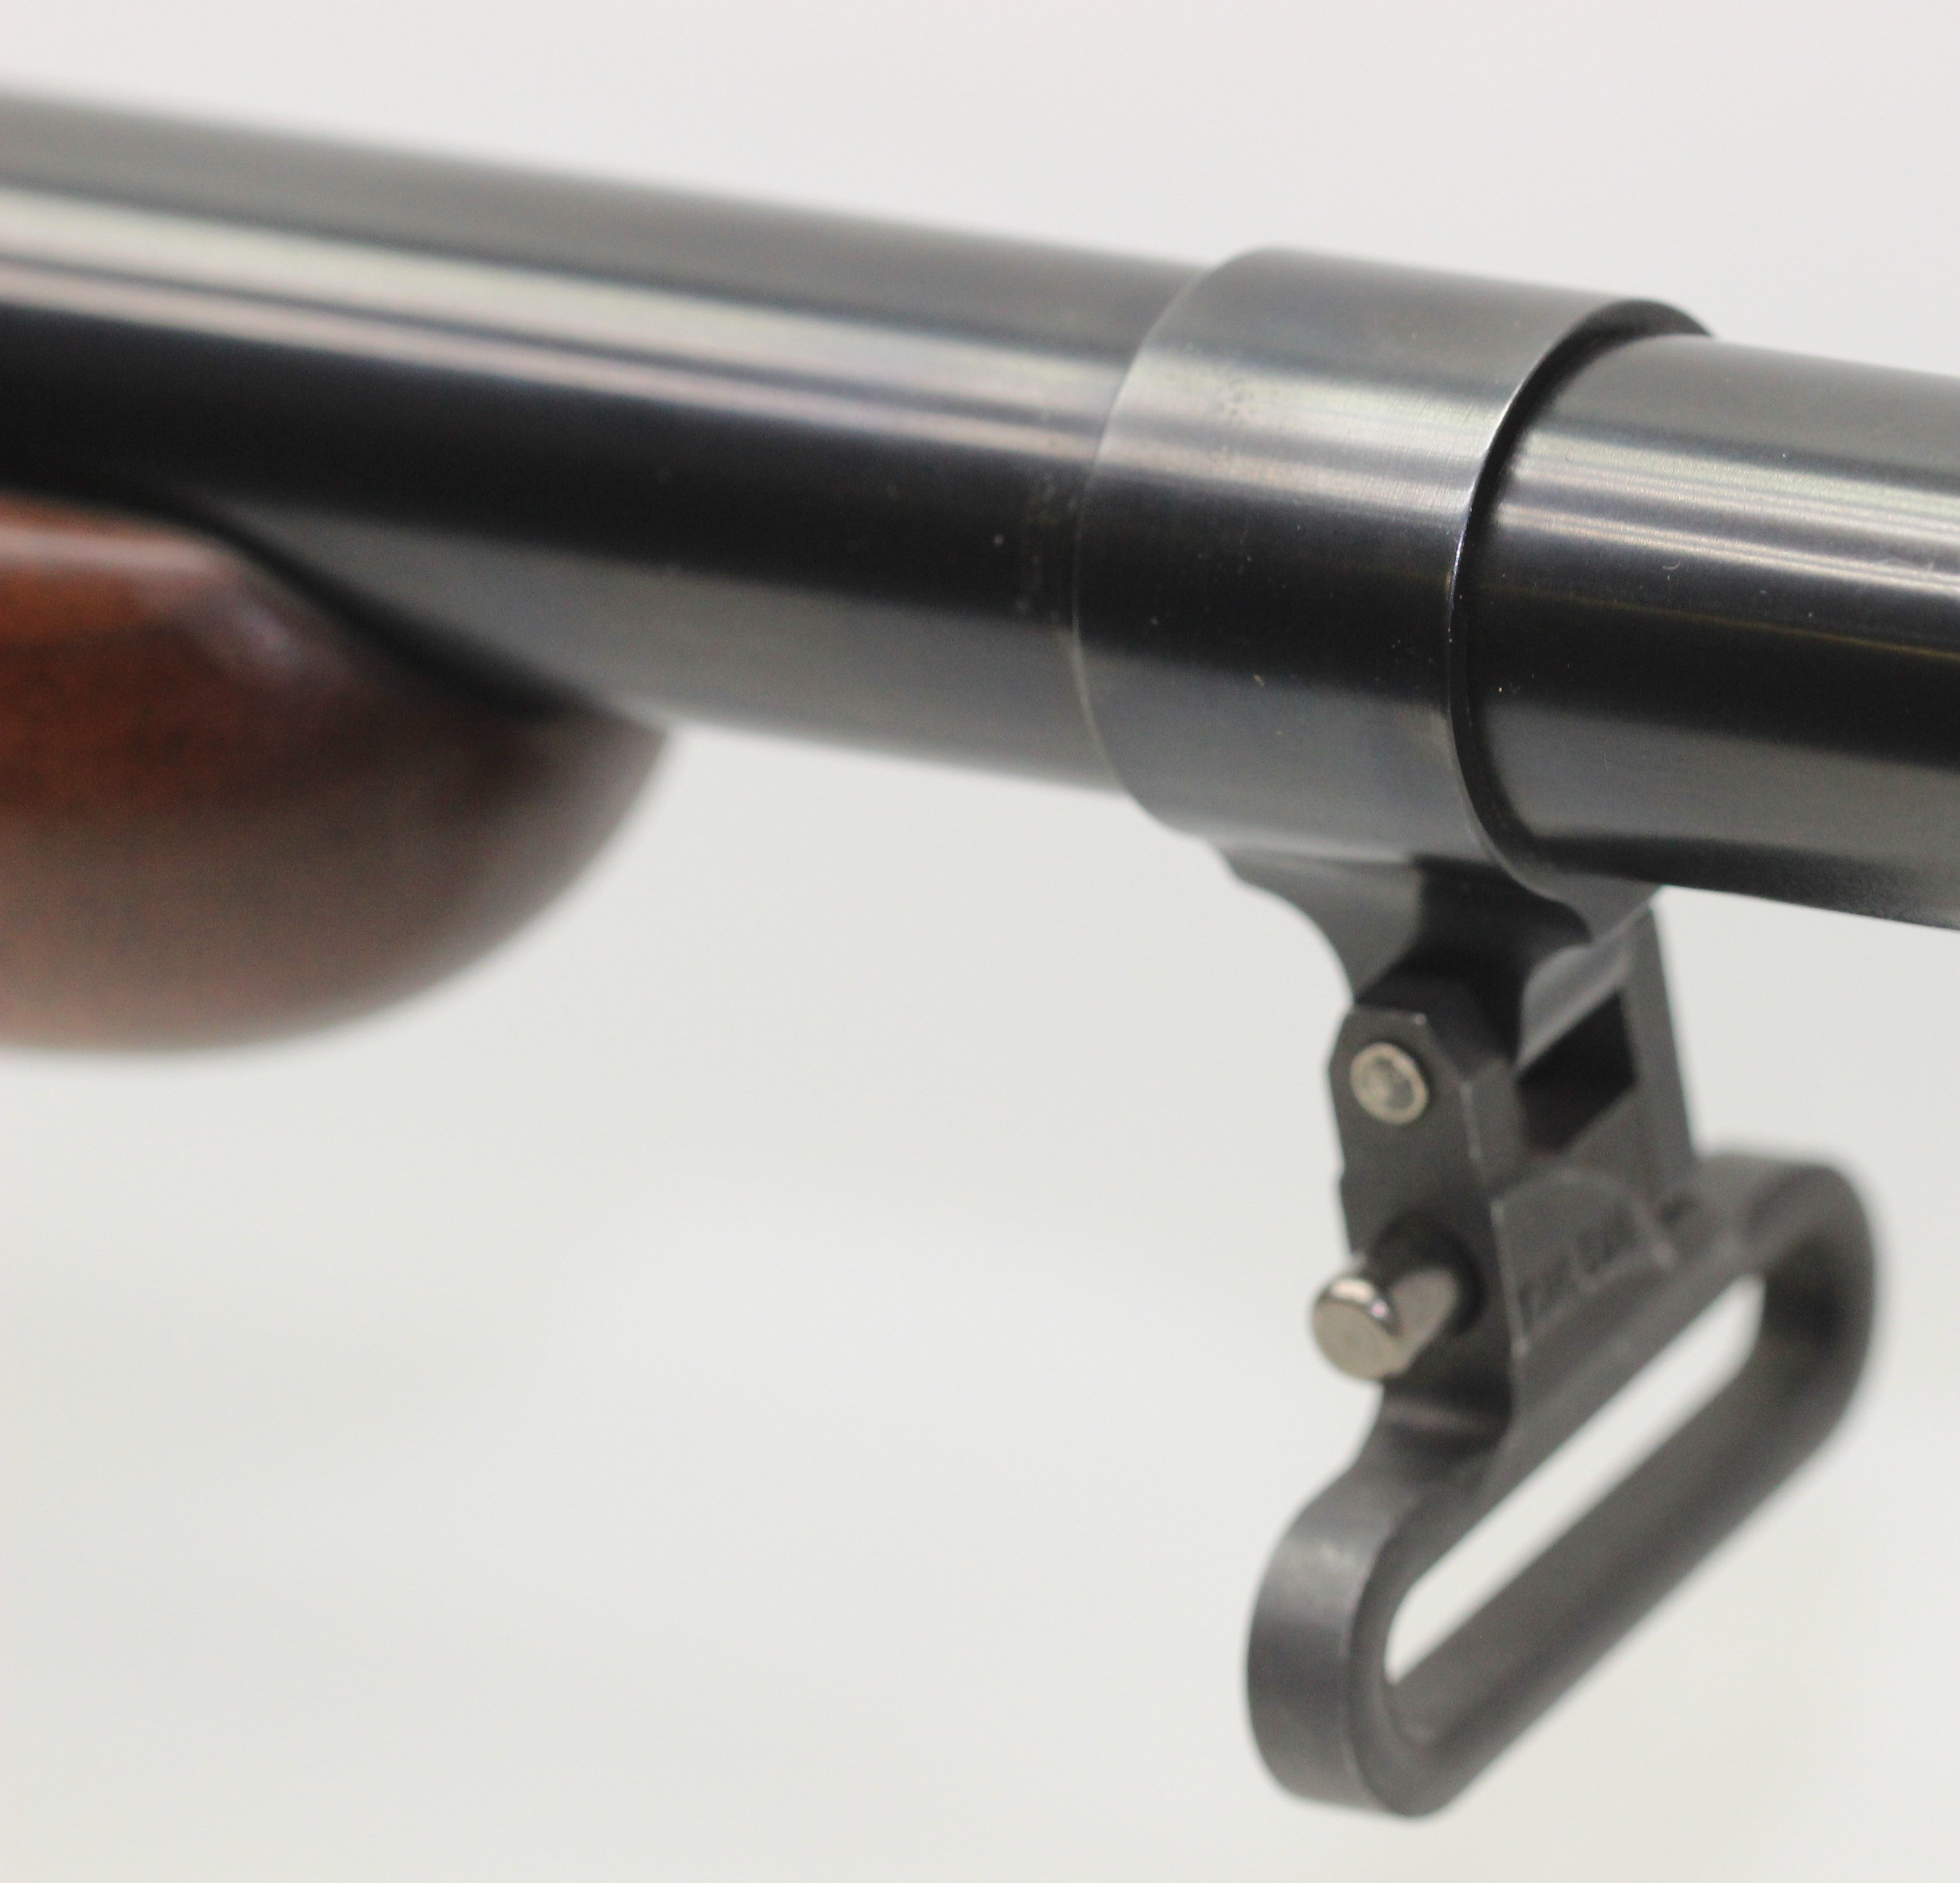 Custom Rifle Build - .416 Remington Magnum Carbine